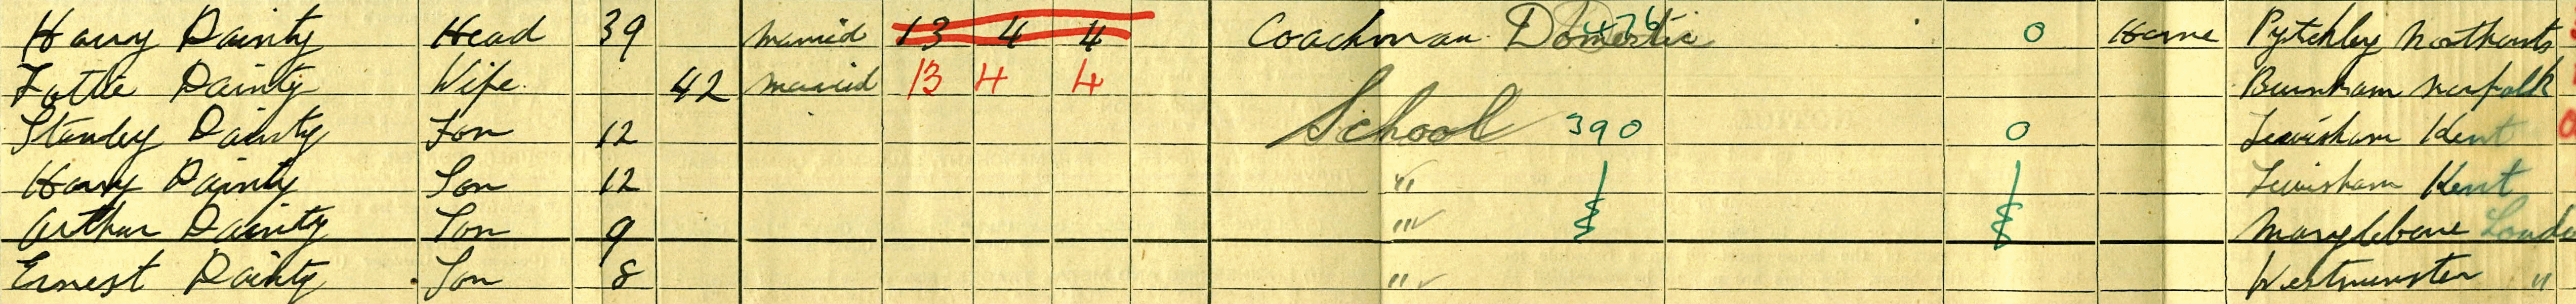 lottie dainty 1911 census